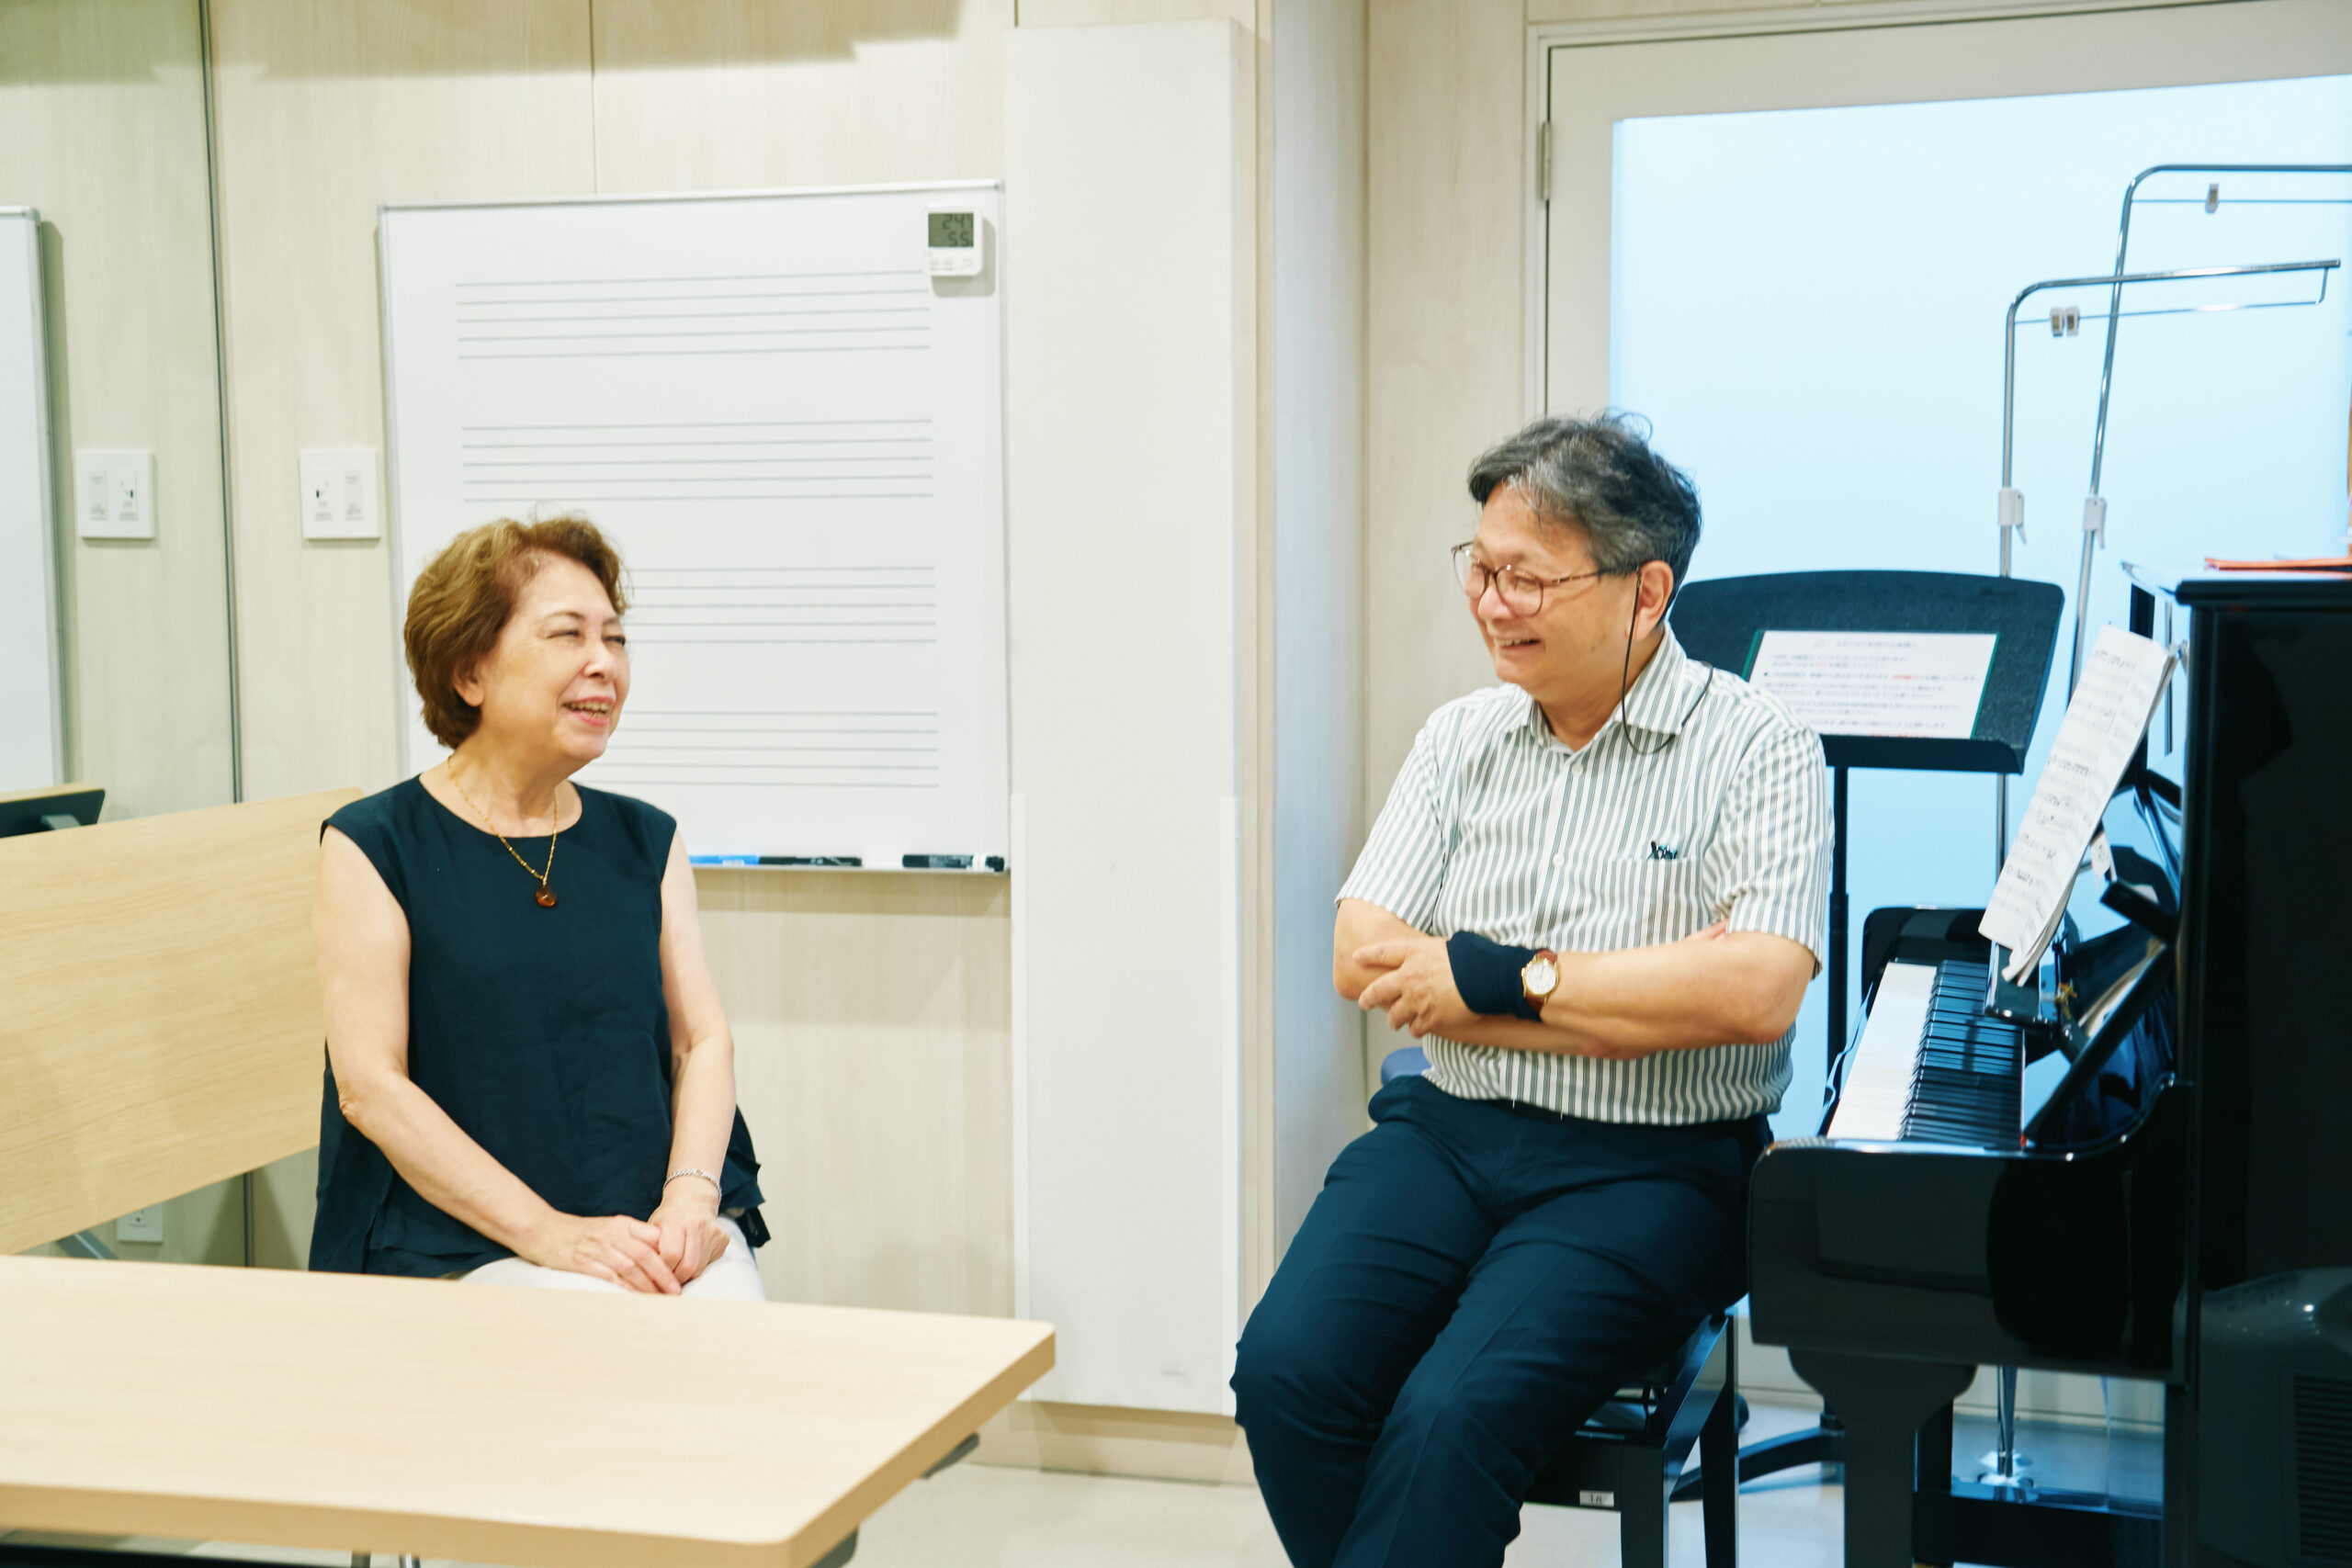 仙台中央音楽センターの代表・庄司美知子さんは、「被災地にピアノをとどける会」の発案者かつ実行委員長。津波でピアノを失った女の子と庄司さんの出会いが、会発足のきっかけとなった。